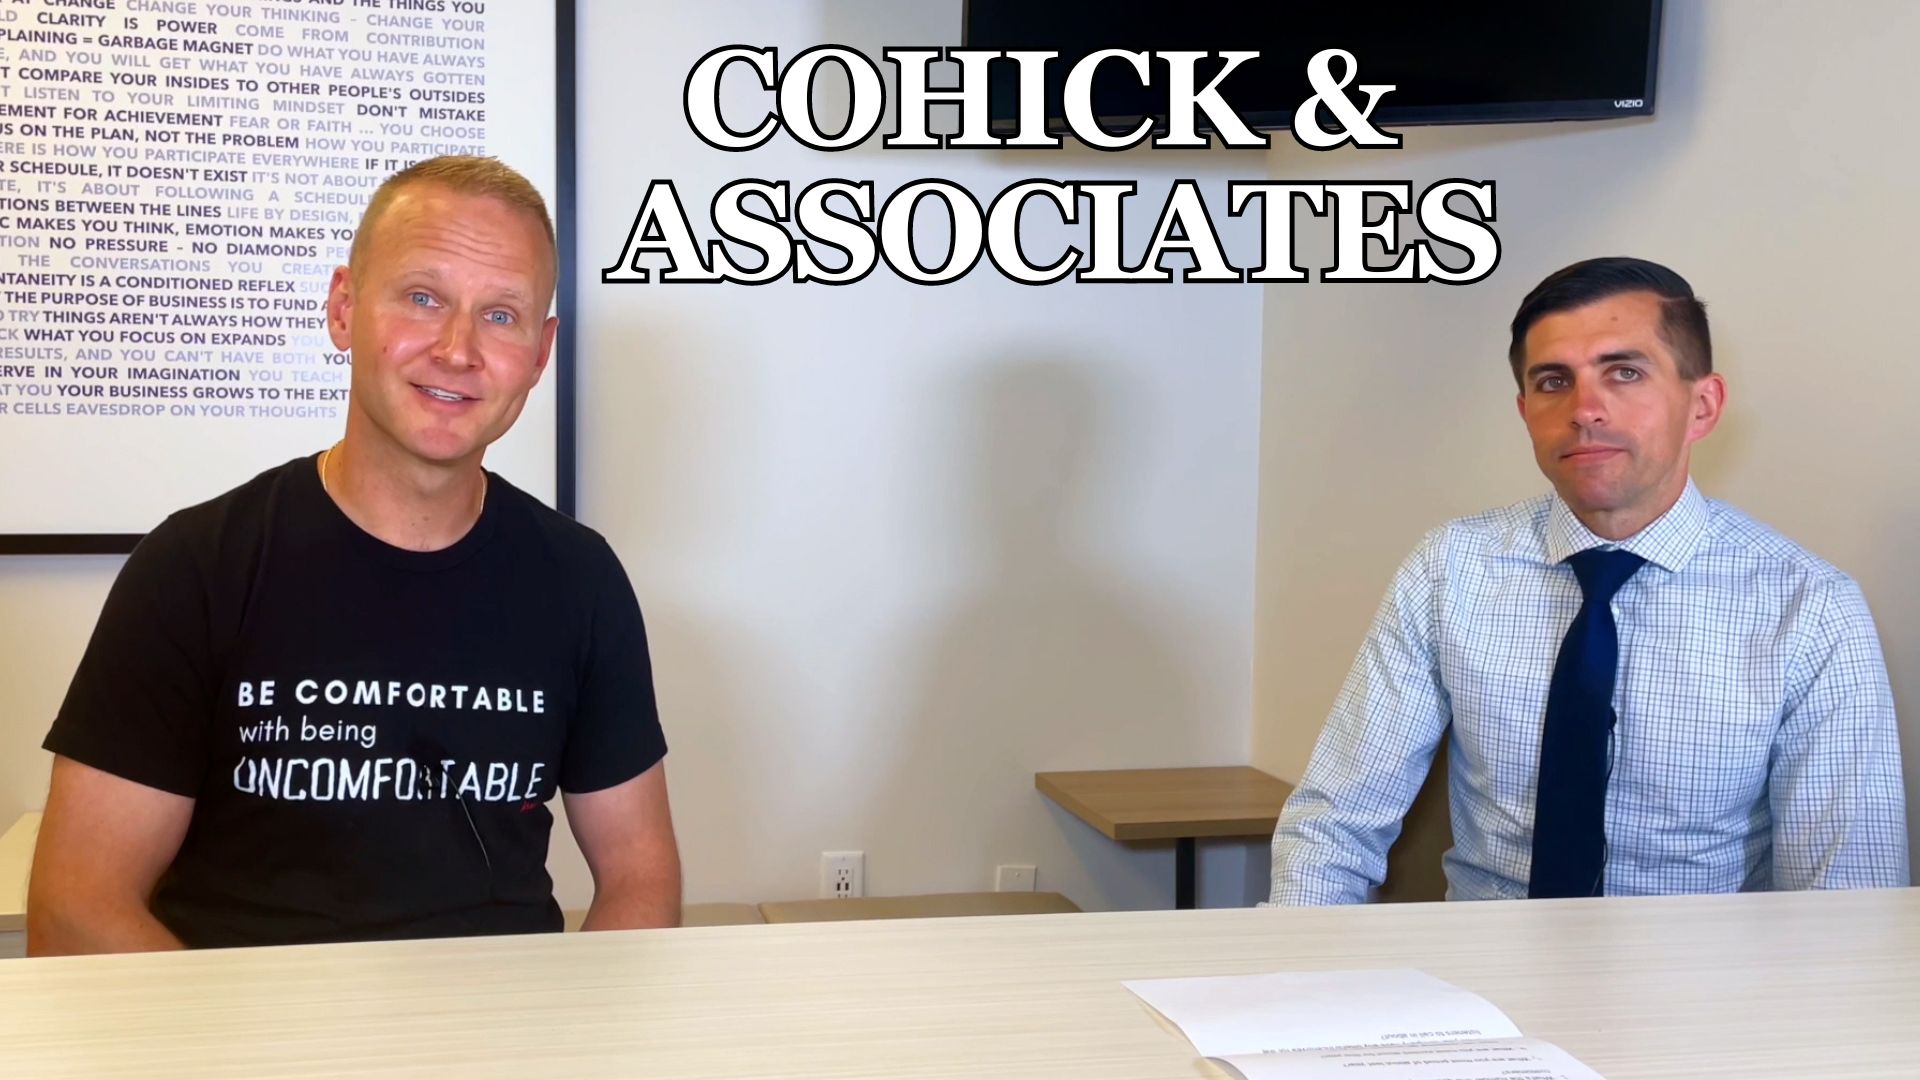 Brand Ambassador: Cohick & Associates Cover Your Tax Needs